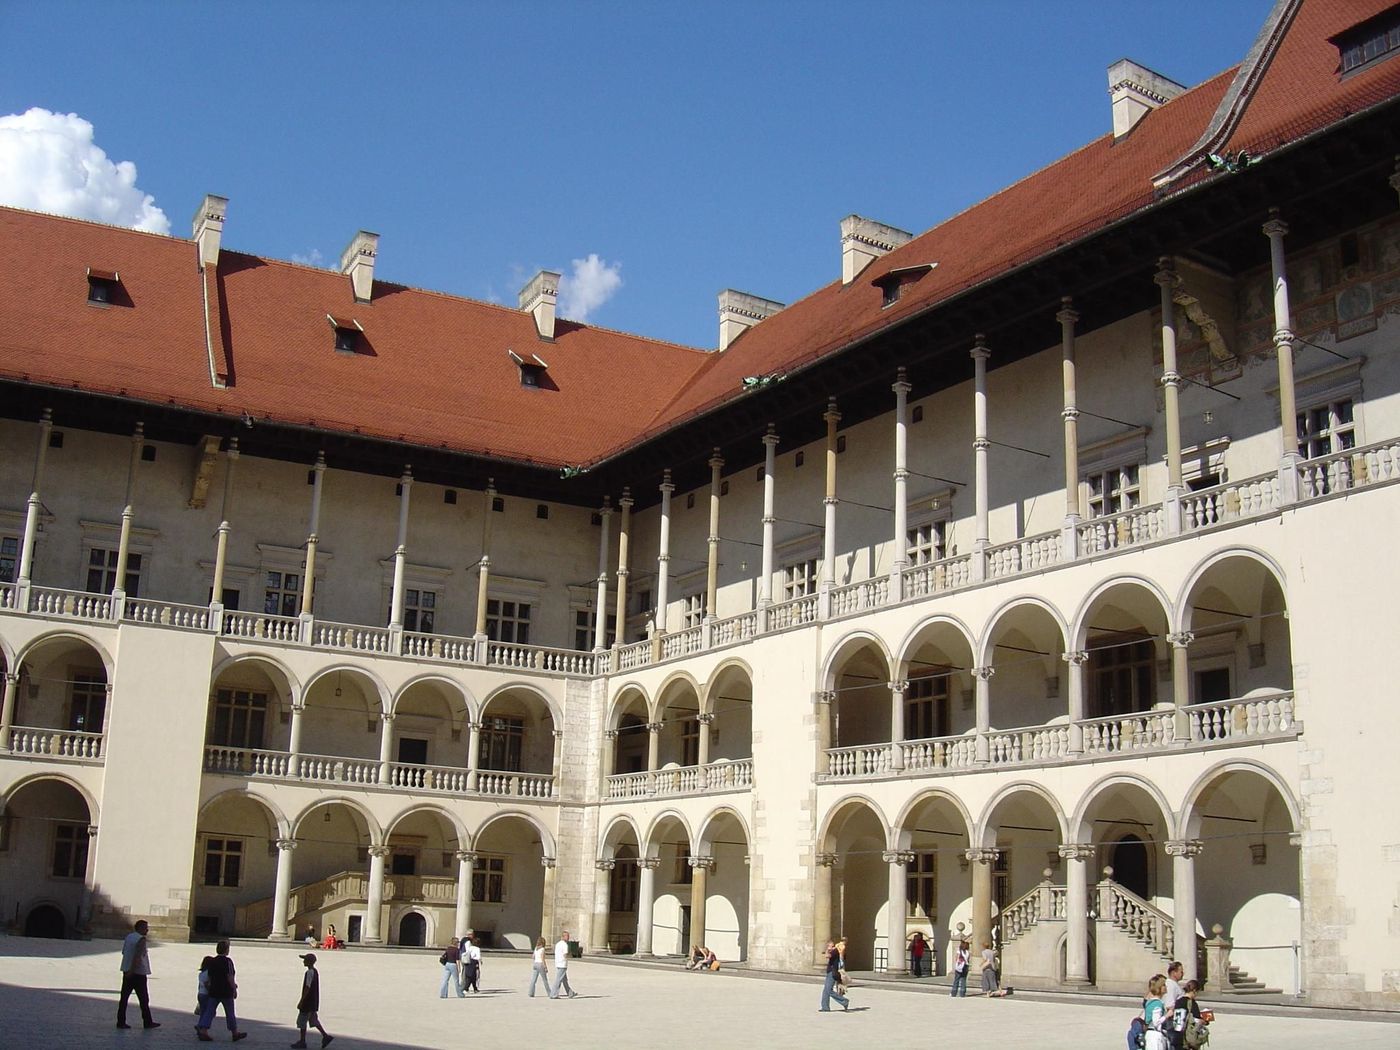 Zamek (château) de Wawel